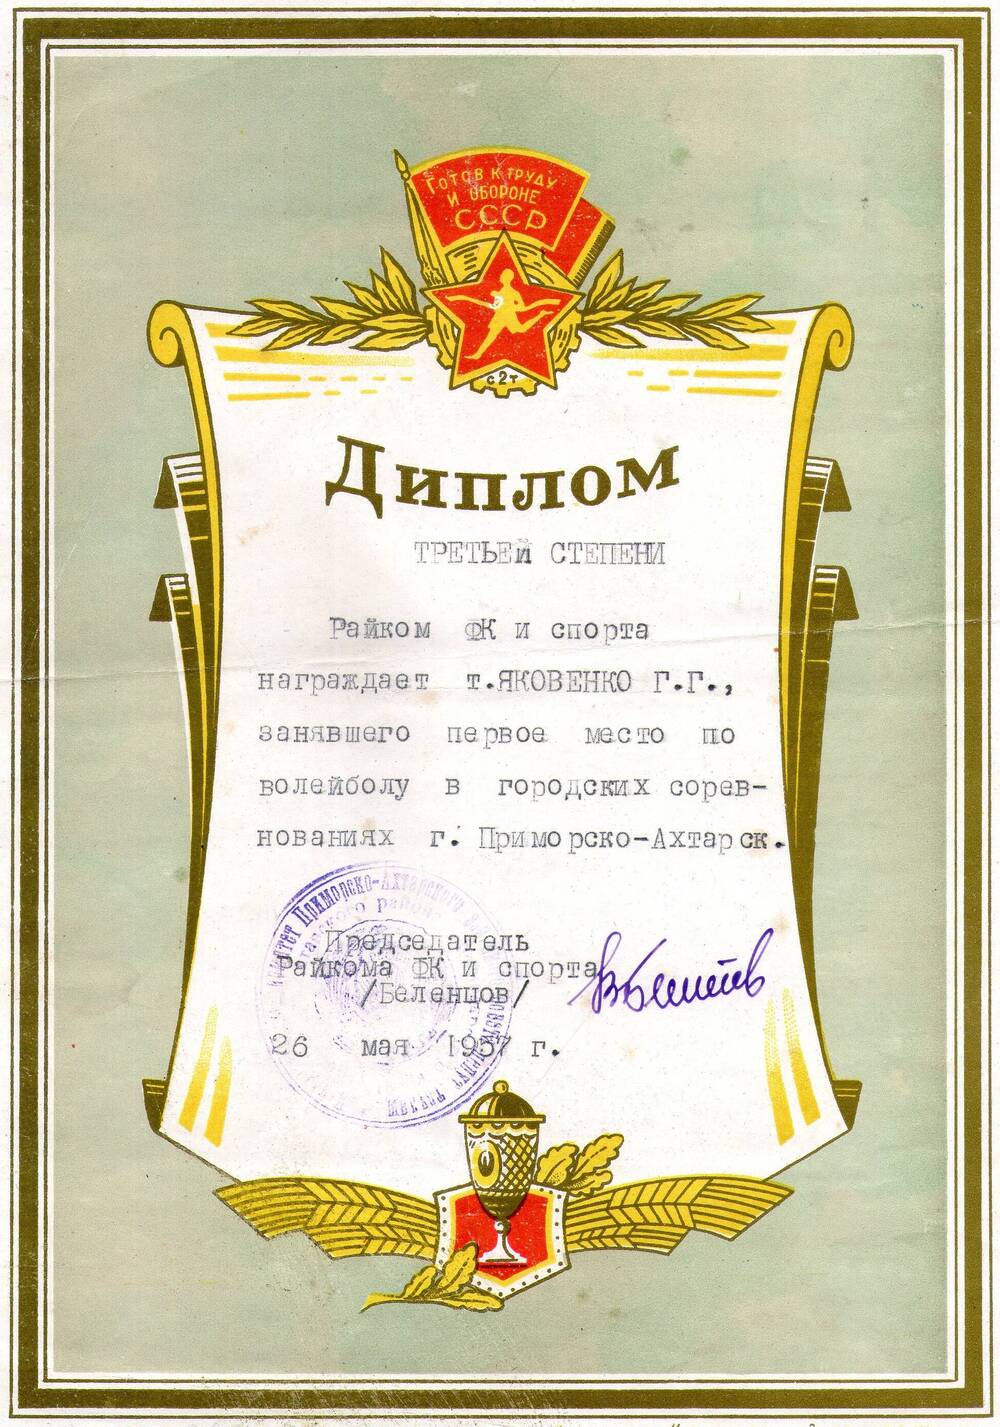 Диплом третьей степени на имя Яковенко Г.Г.